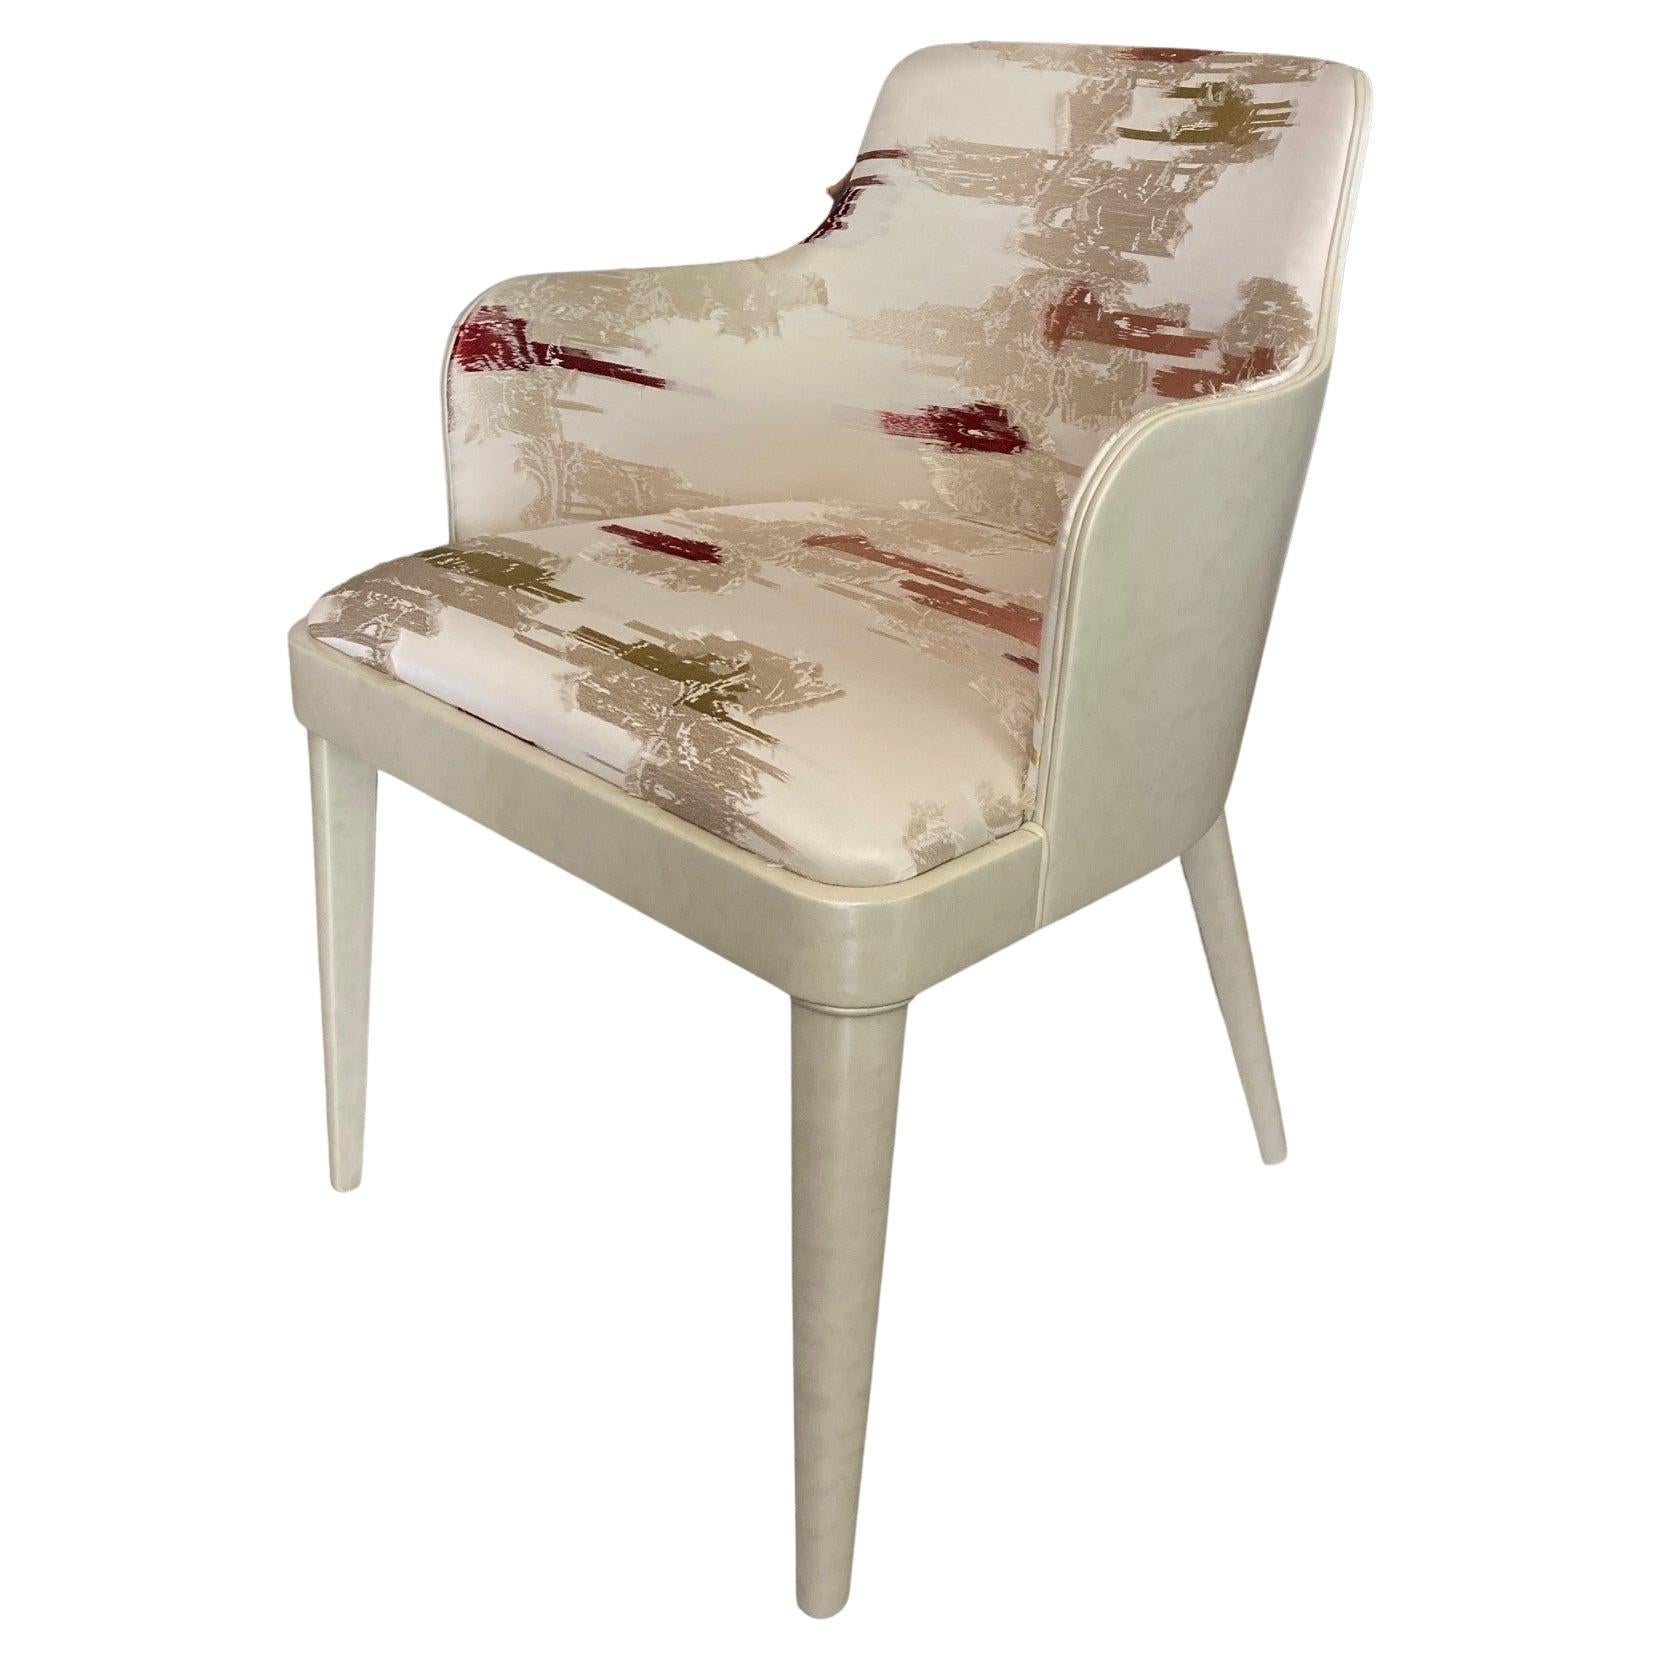 Lola Royale, der klassische gepolsterte Sessel, bezogen mit feinem Stoff